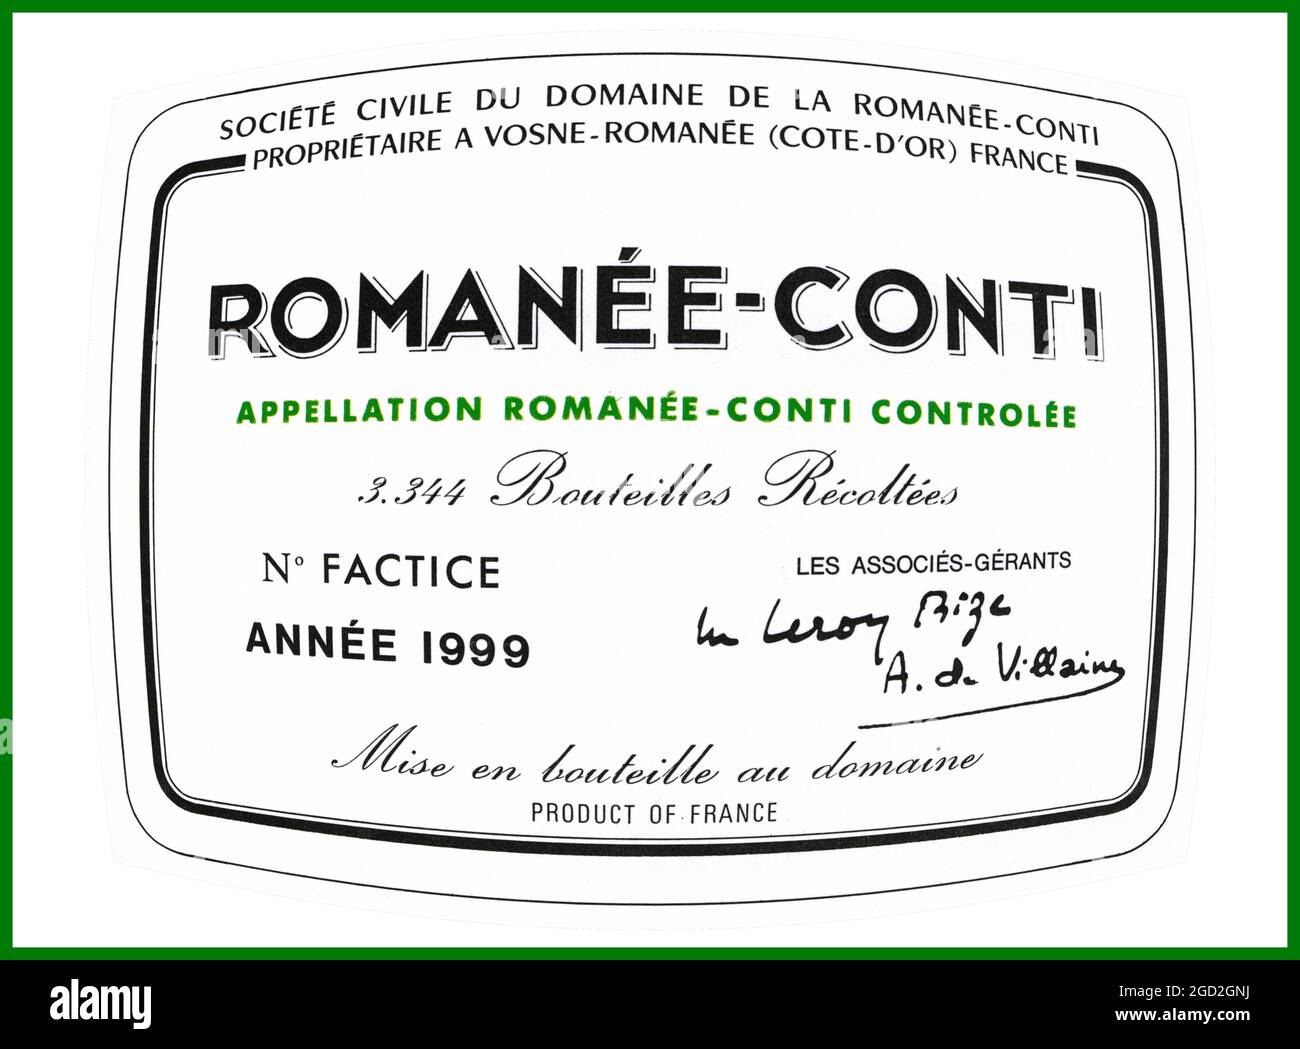 DRC 'ROMANEE-CONTI' 1999 étiquette de bouteille de vin 'Domaine Romanée-Conti' le vin Pinot Noir le plus raréfié et le plus cher du monde Vosne Romanée Bourgogne France Banque D'Images